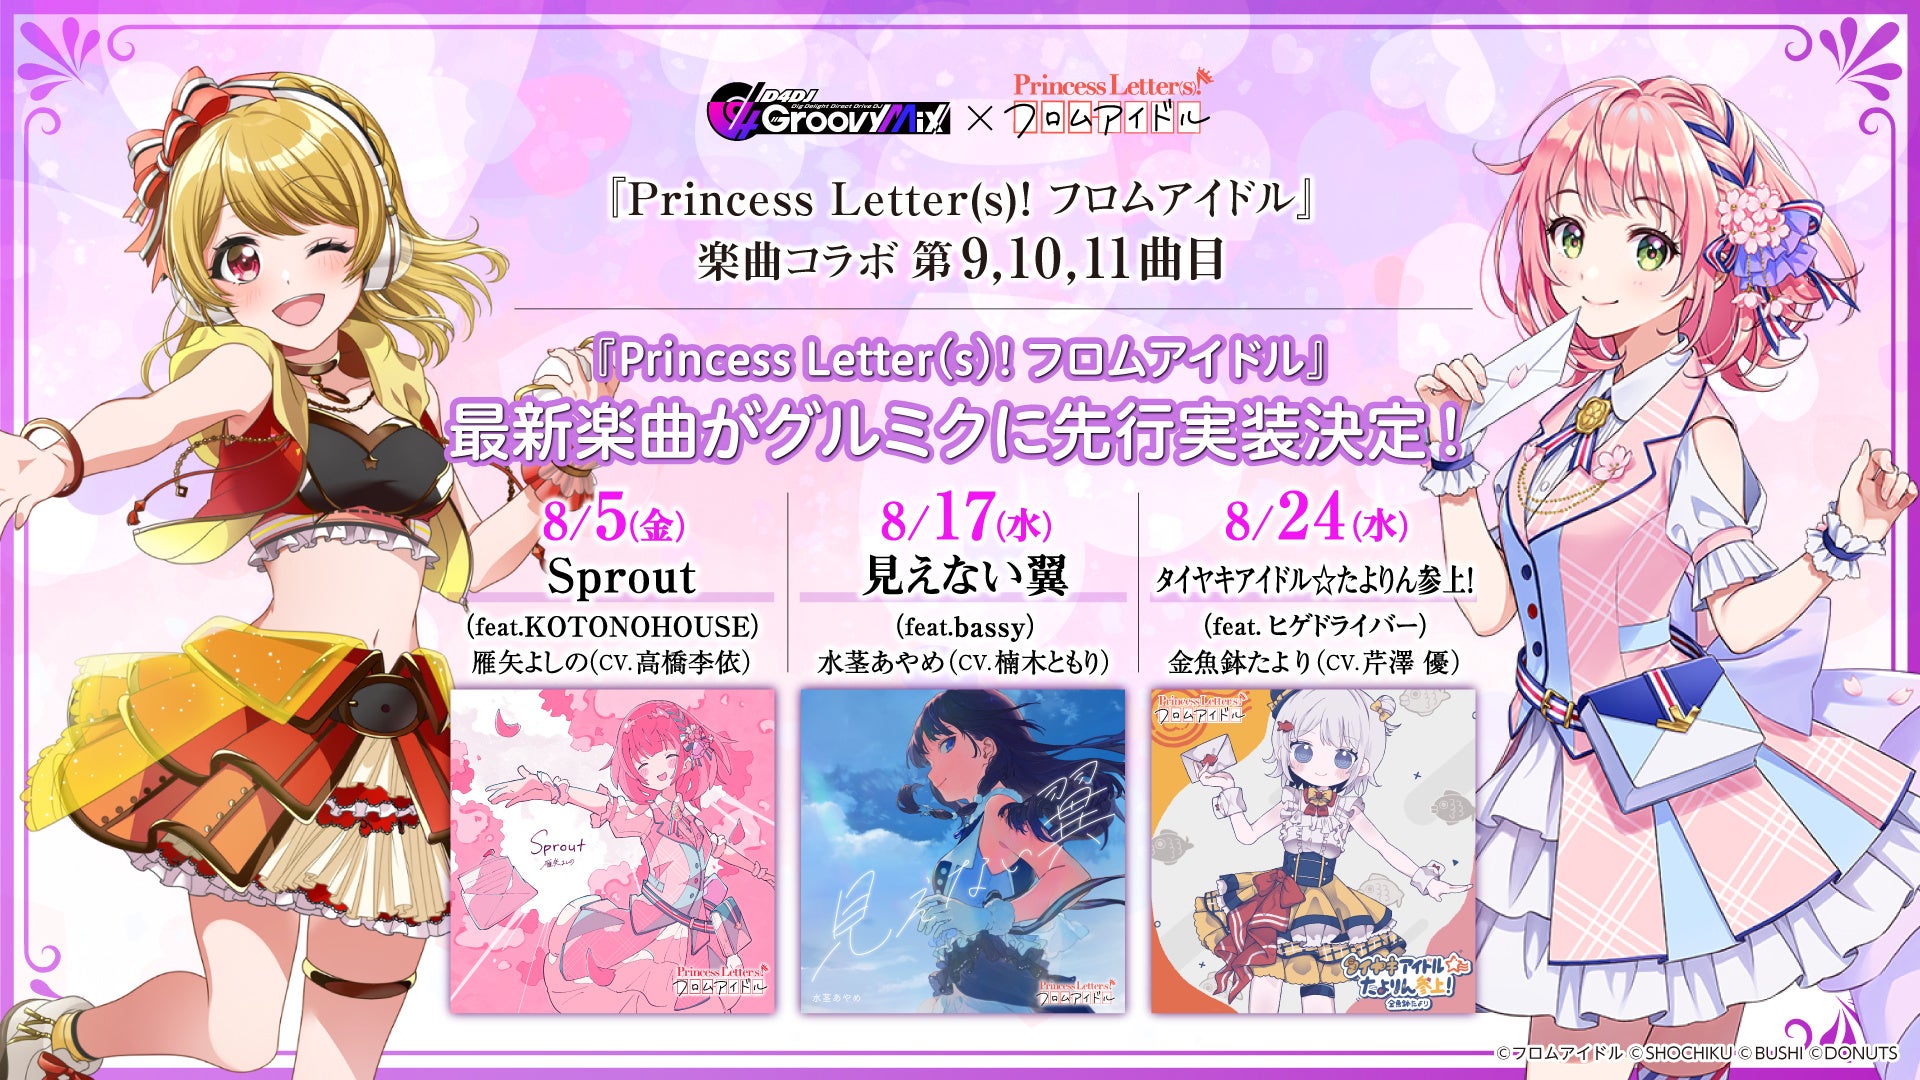 スマートフォン向けリズムゲーム「D4DJ Groovy Mix」に「Princess Letter(s)! フロムアイドル」と楽曲コラボ第9～11曲目を実装！